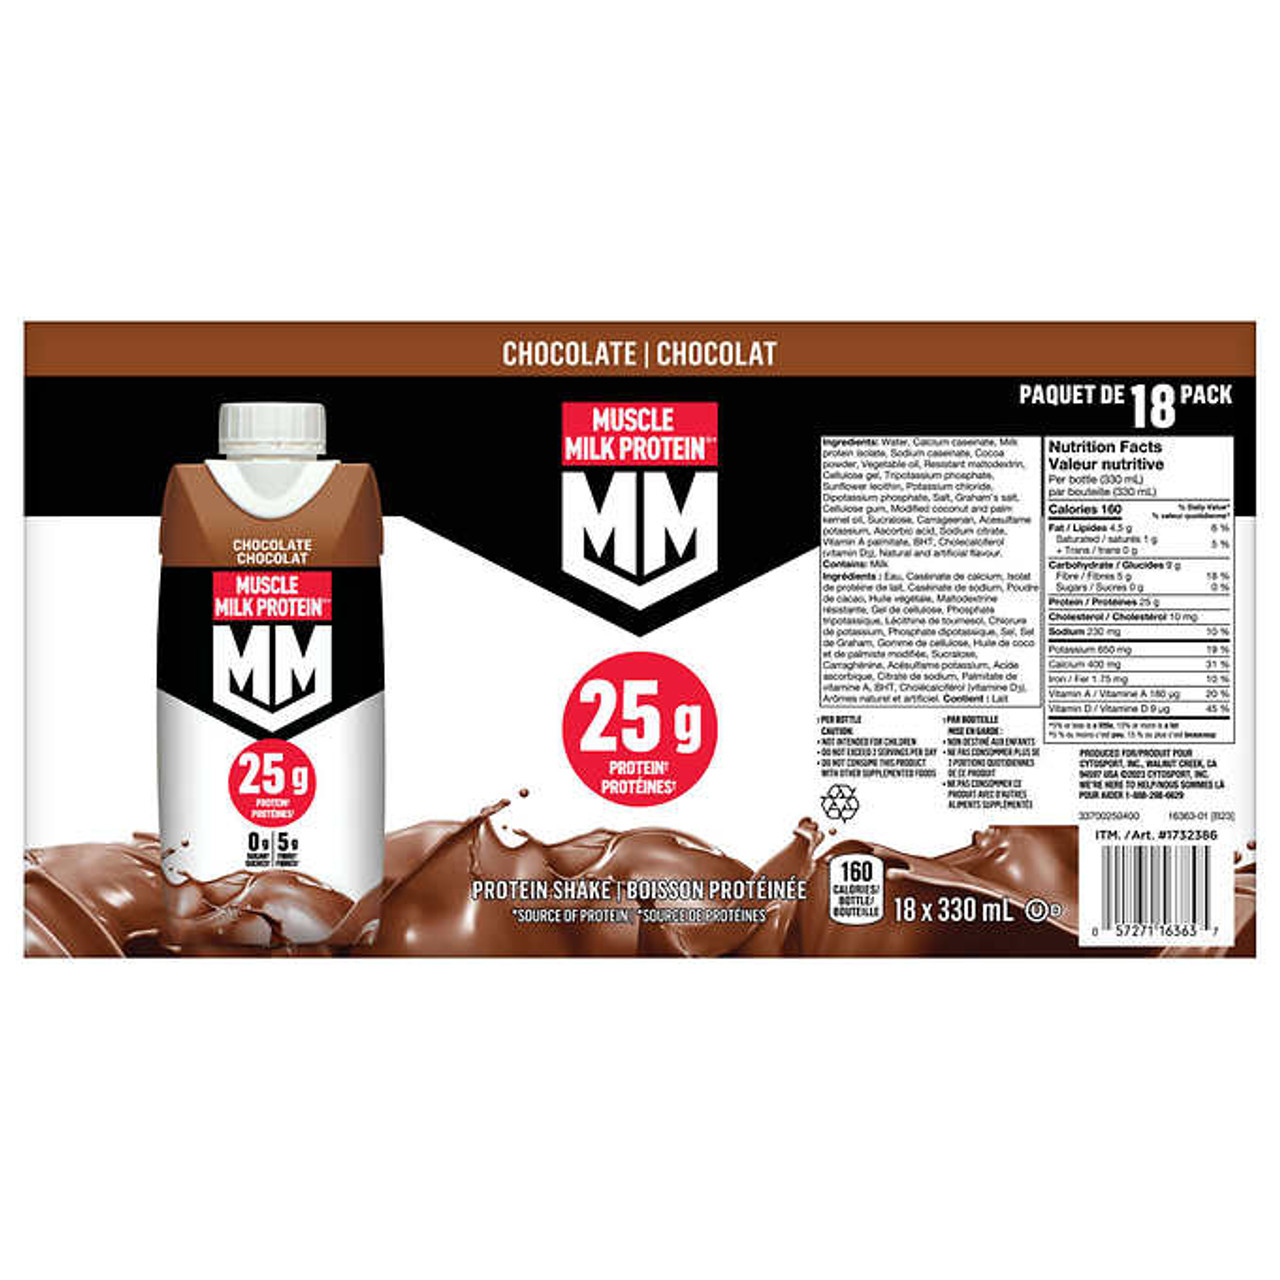 Muscle Milk Protein Chocolate Protein Shake, 18 x 330 mL - High-Protein & Fiber - Chicken Pieces